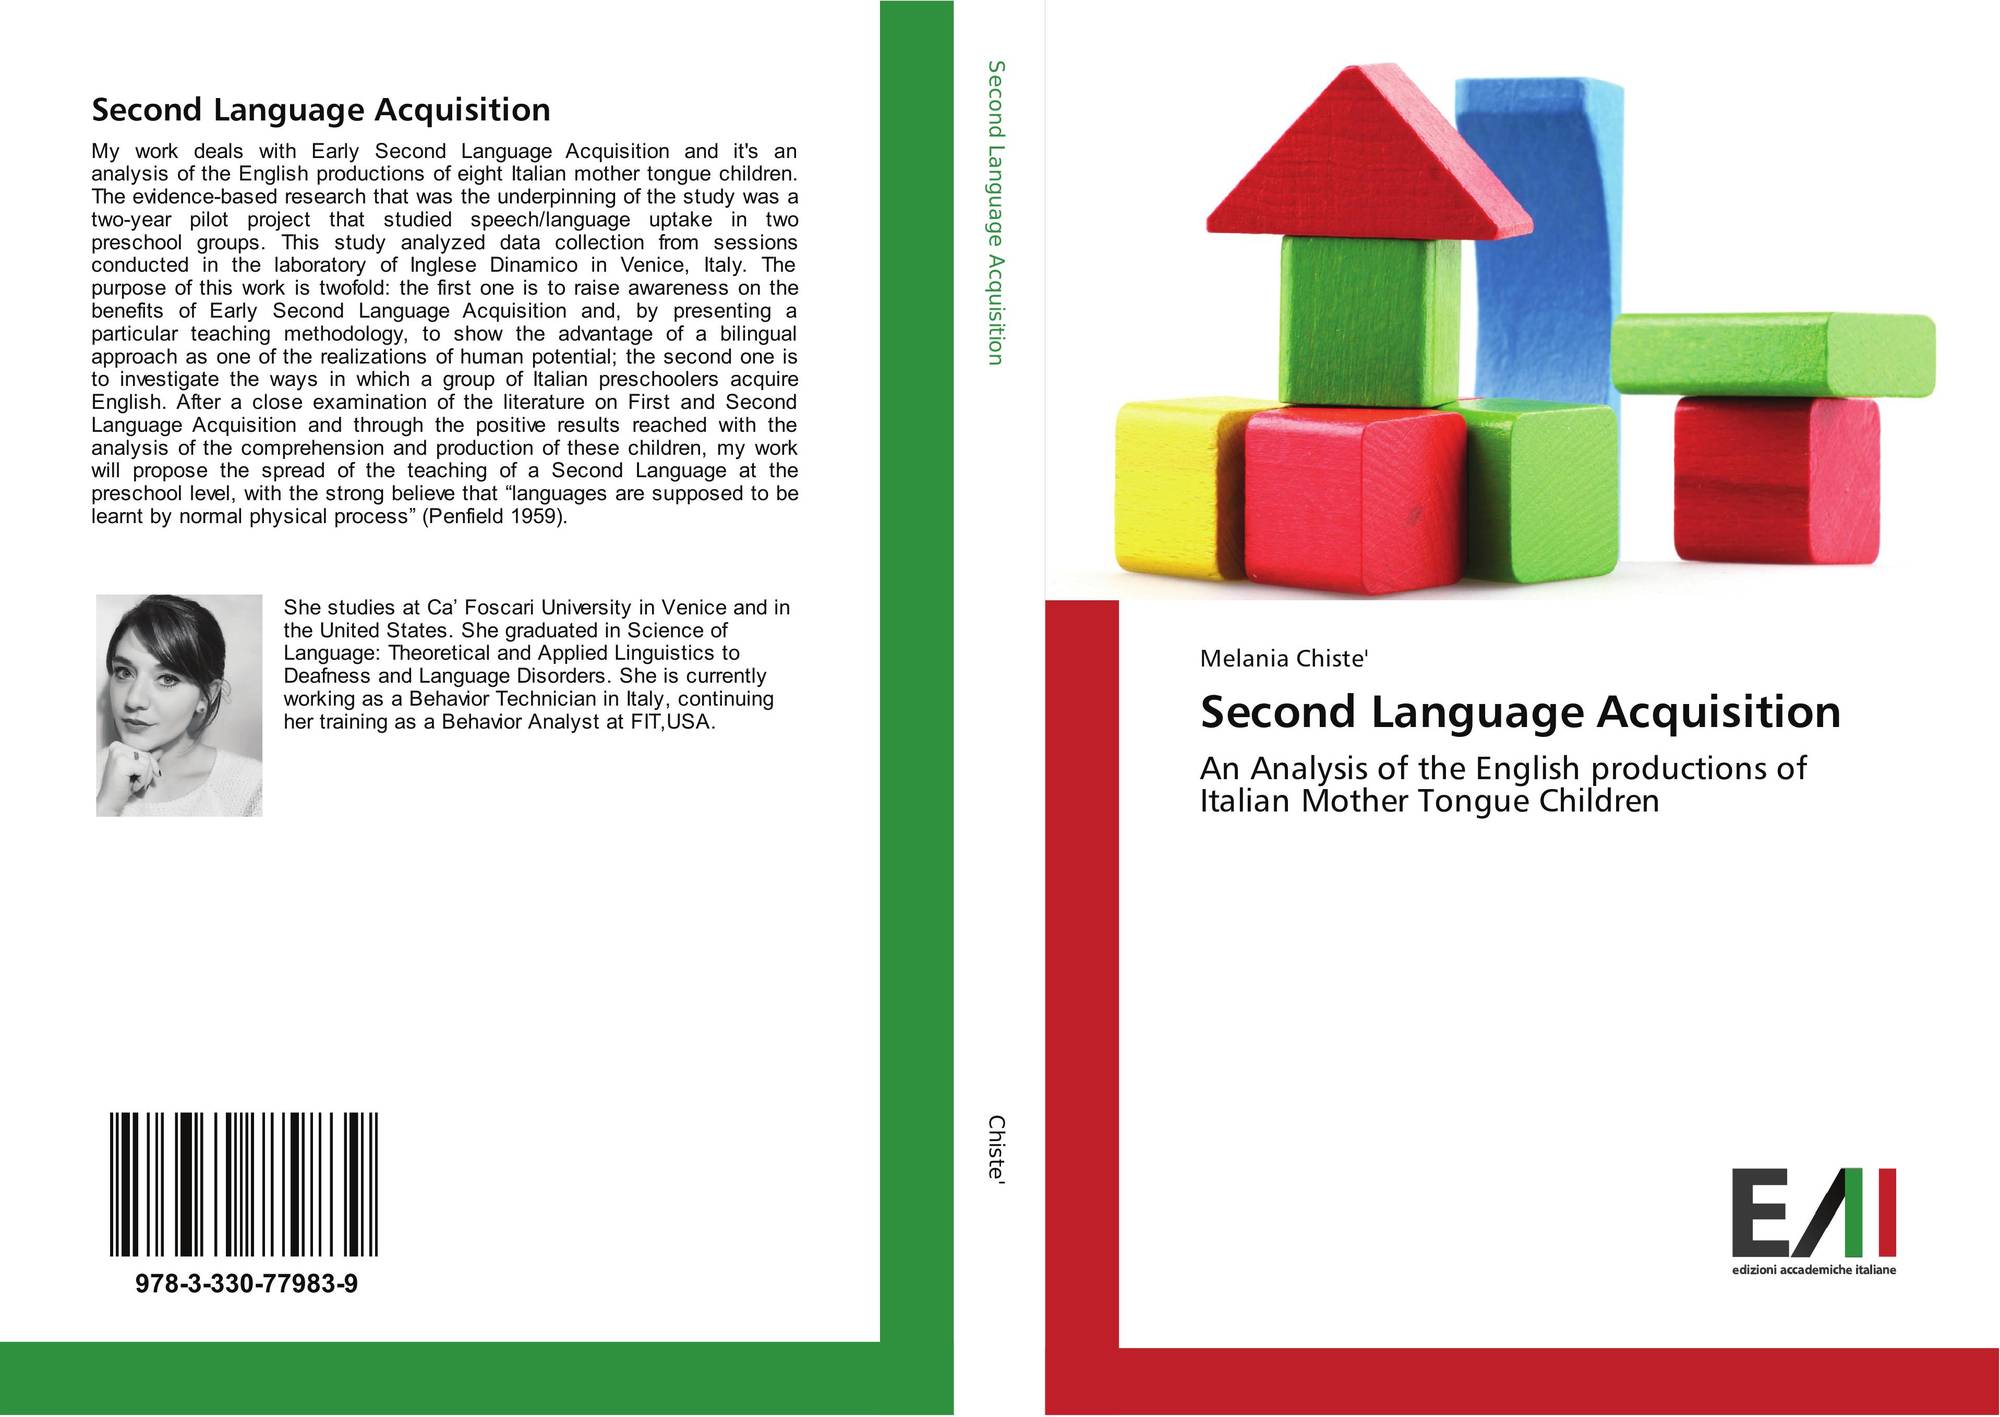 sample case study second language acquisition